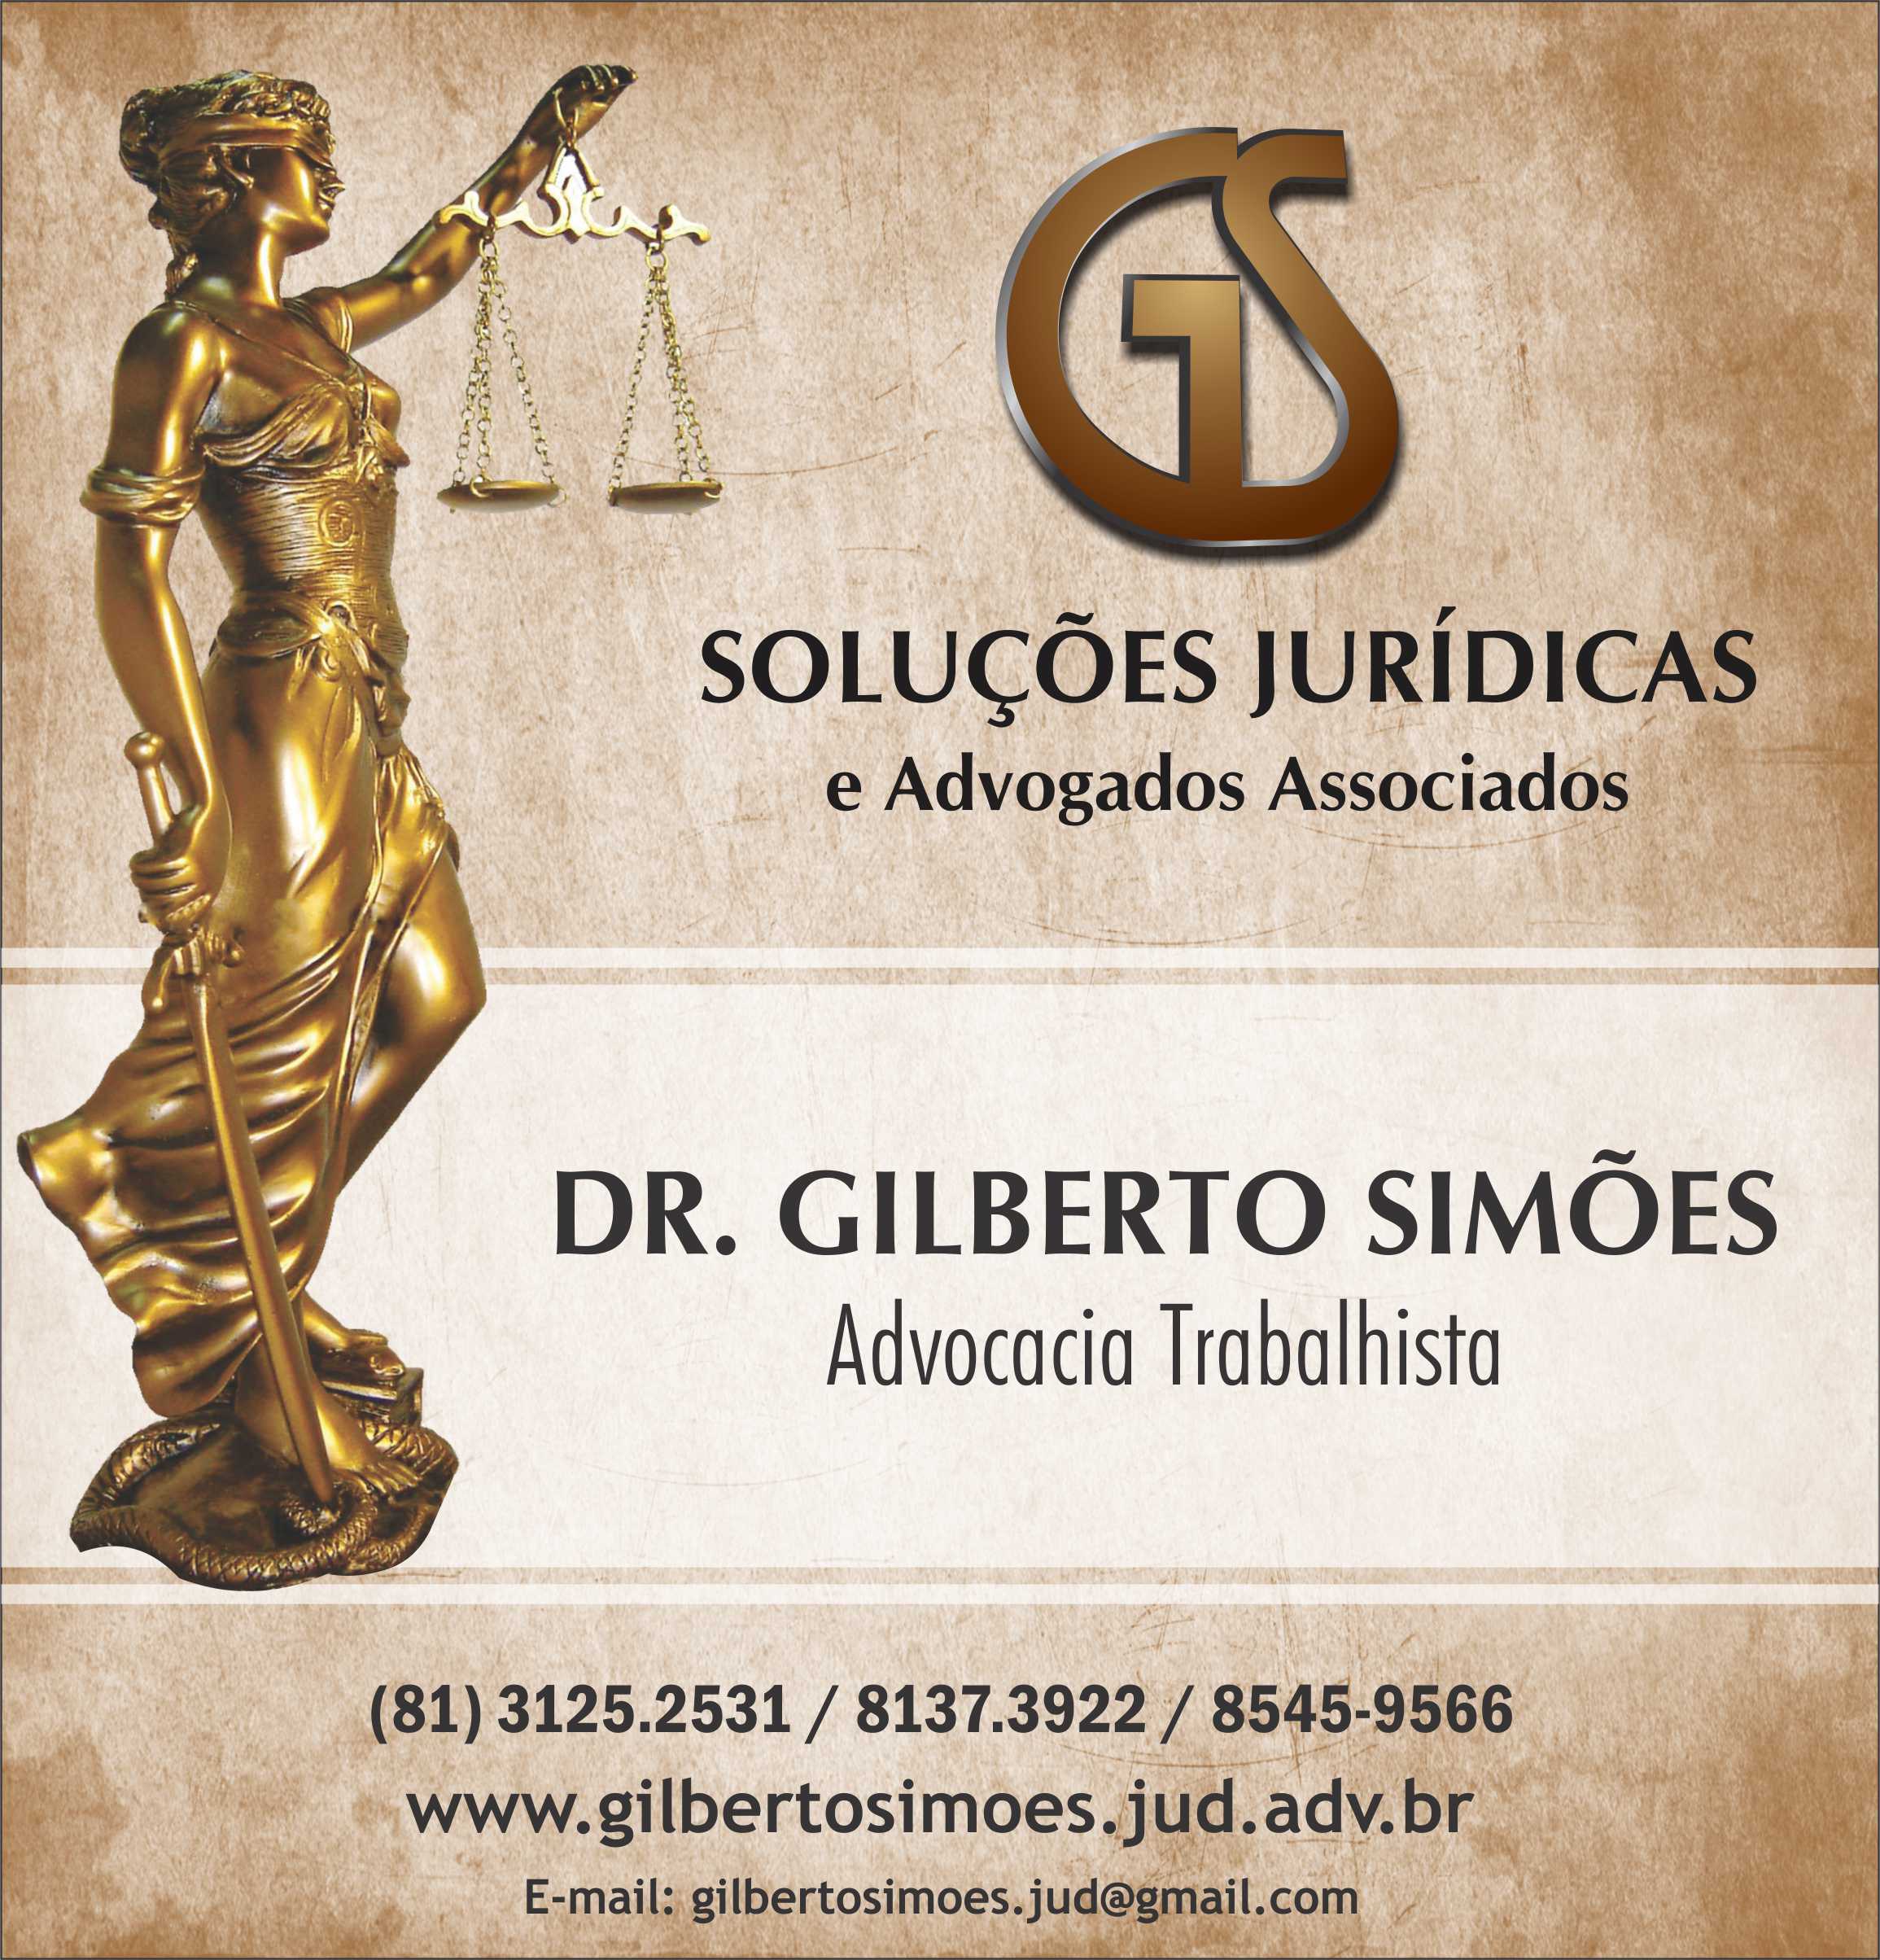 GS Soluções Jurídicas